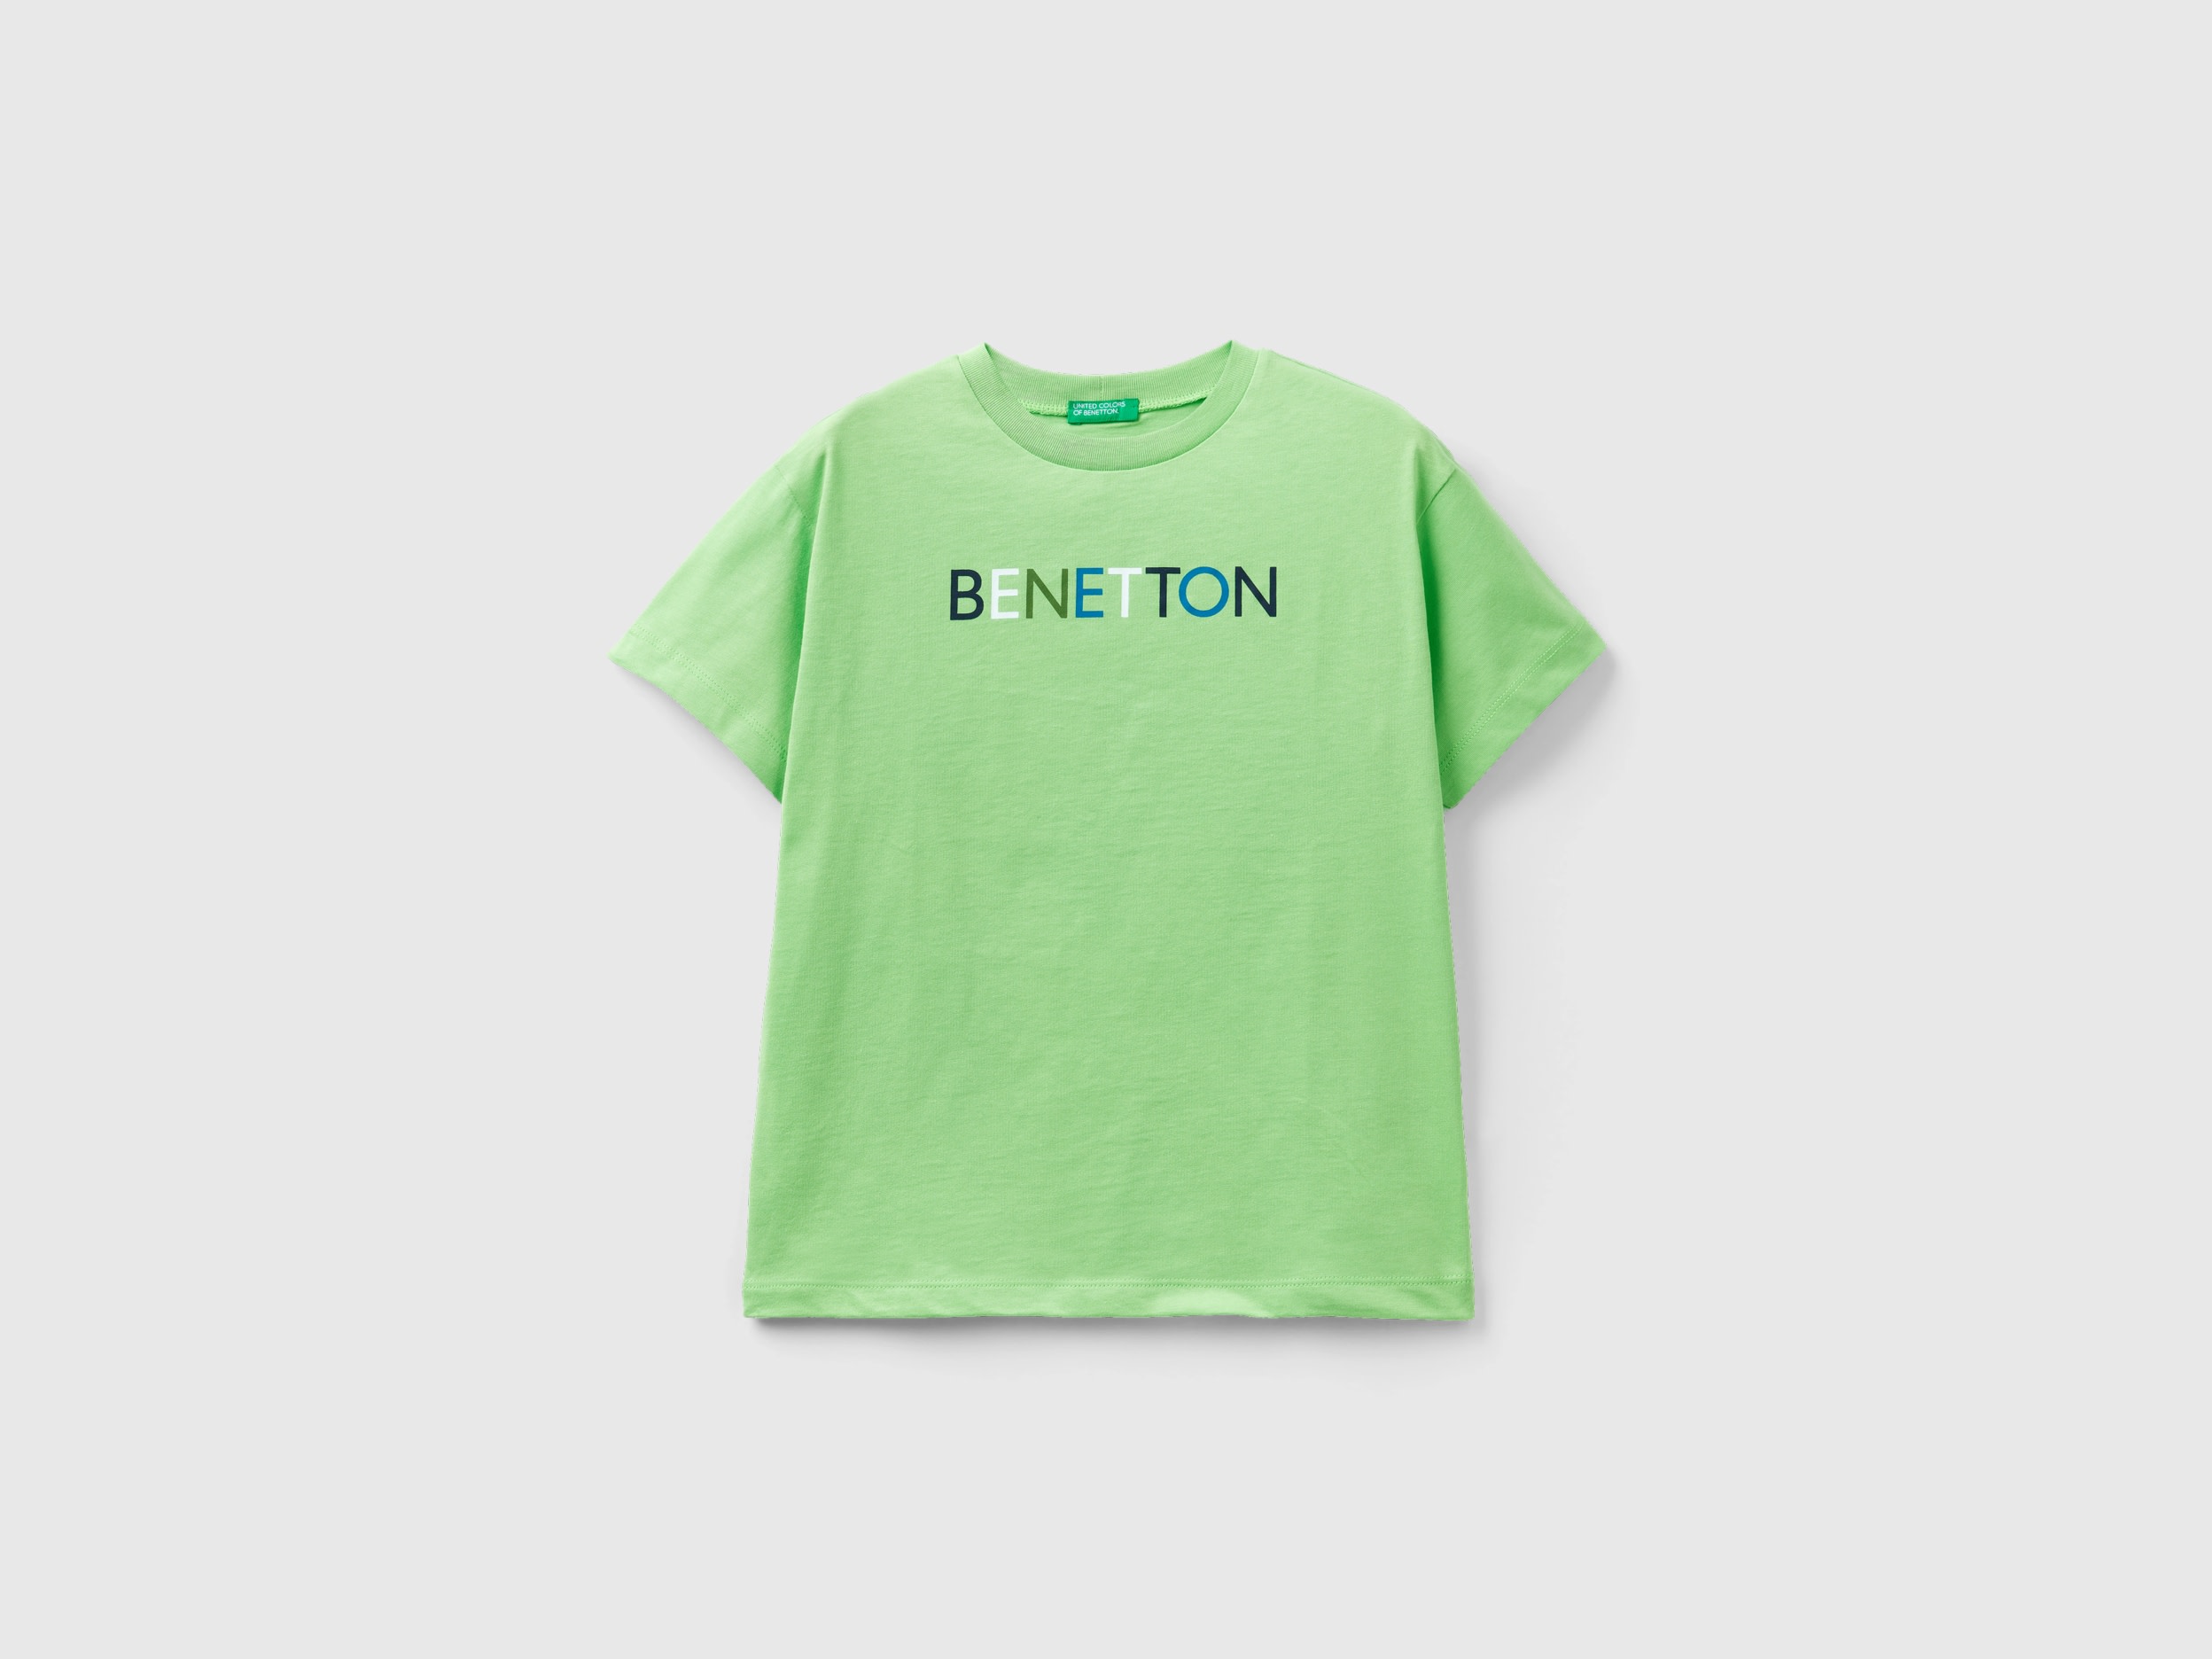 Benetton, 100% Organic Cotton T-shirt, size 3XL, Light Green, Kids